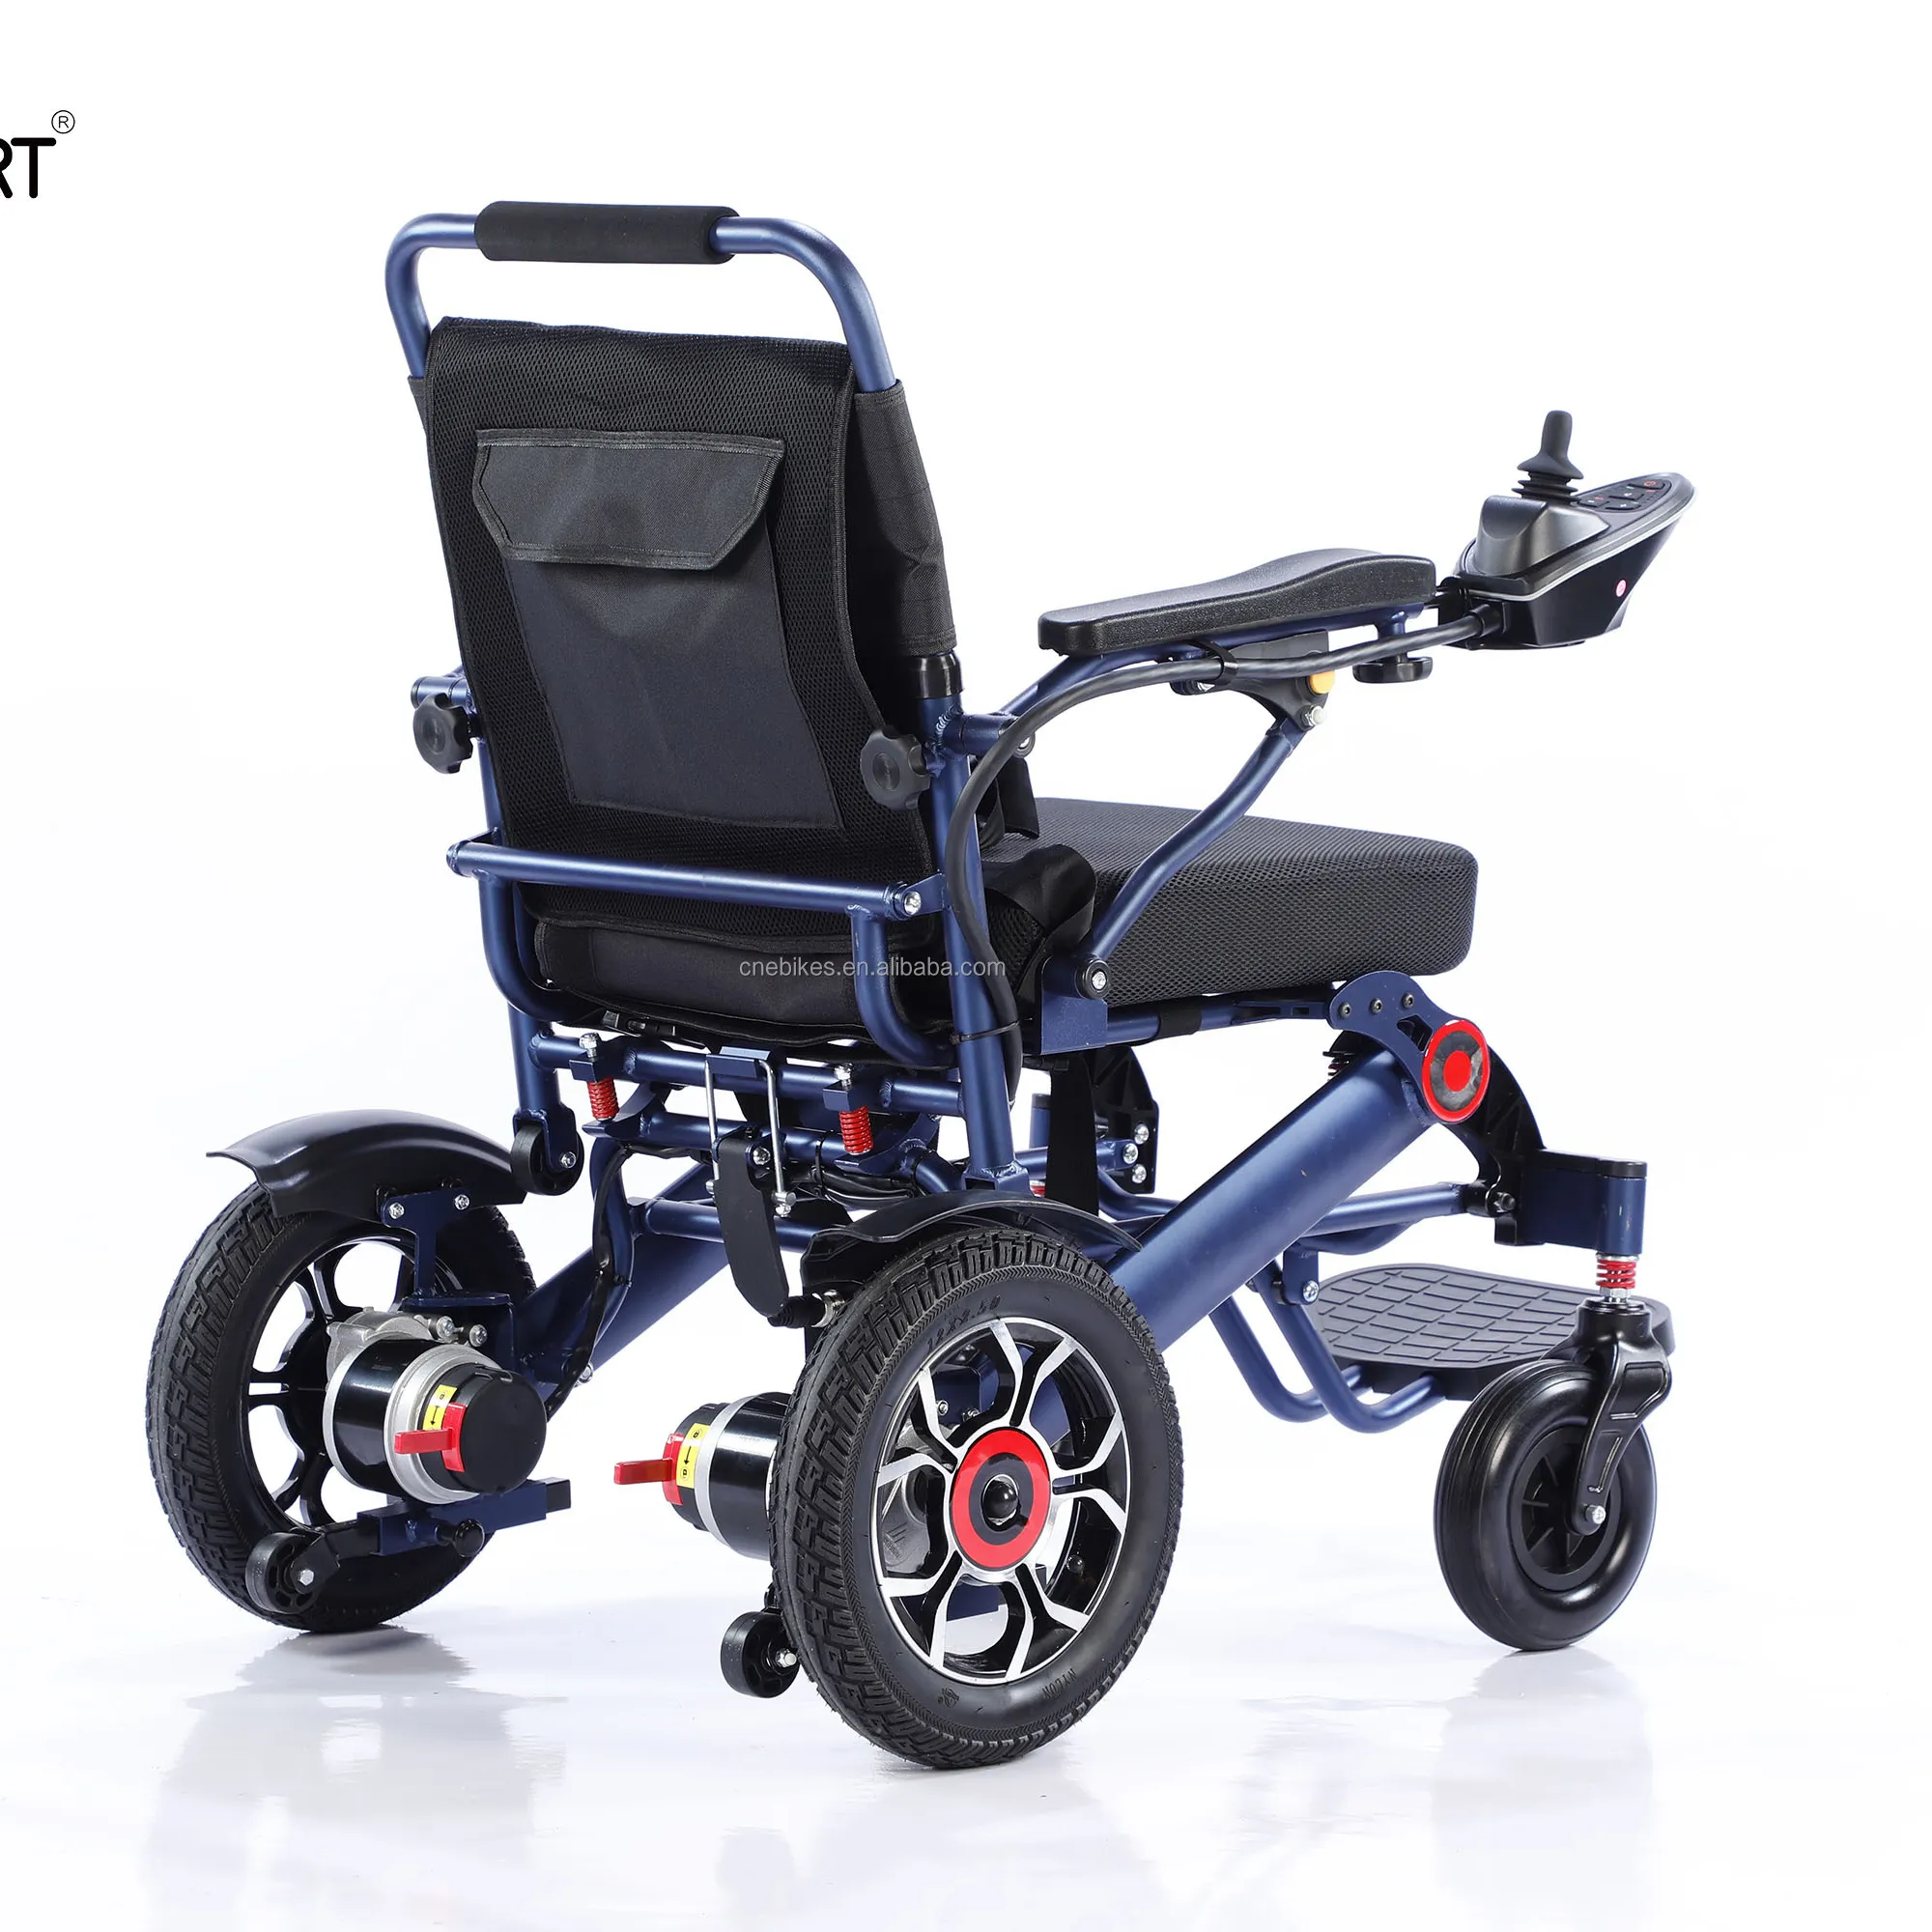 ELESMART fabrique une batterie de 12ah, un moteur de 250w, un fauteuil roulant électrique pliable et léger EW-20-D